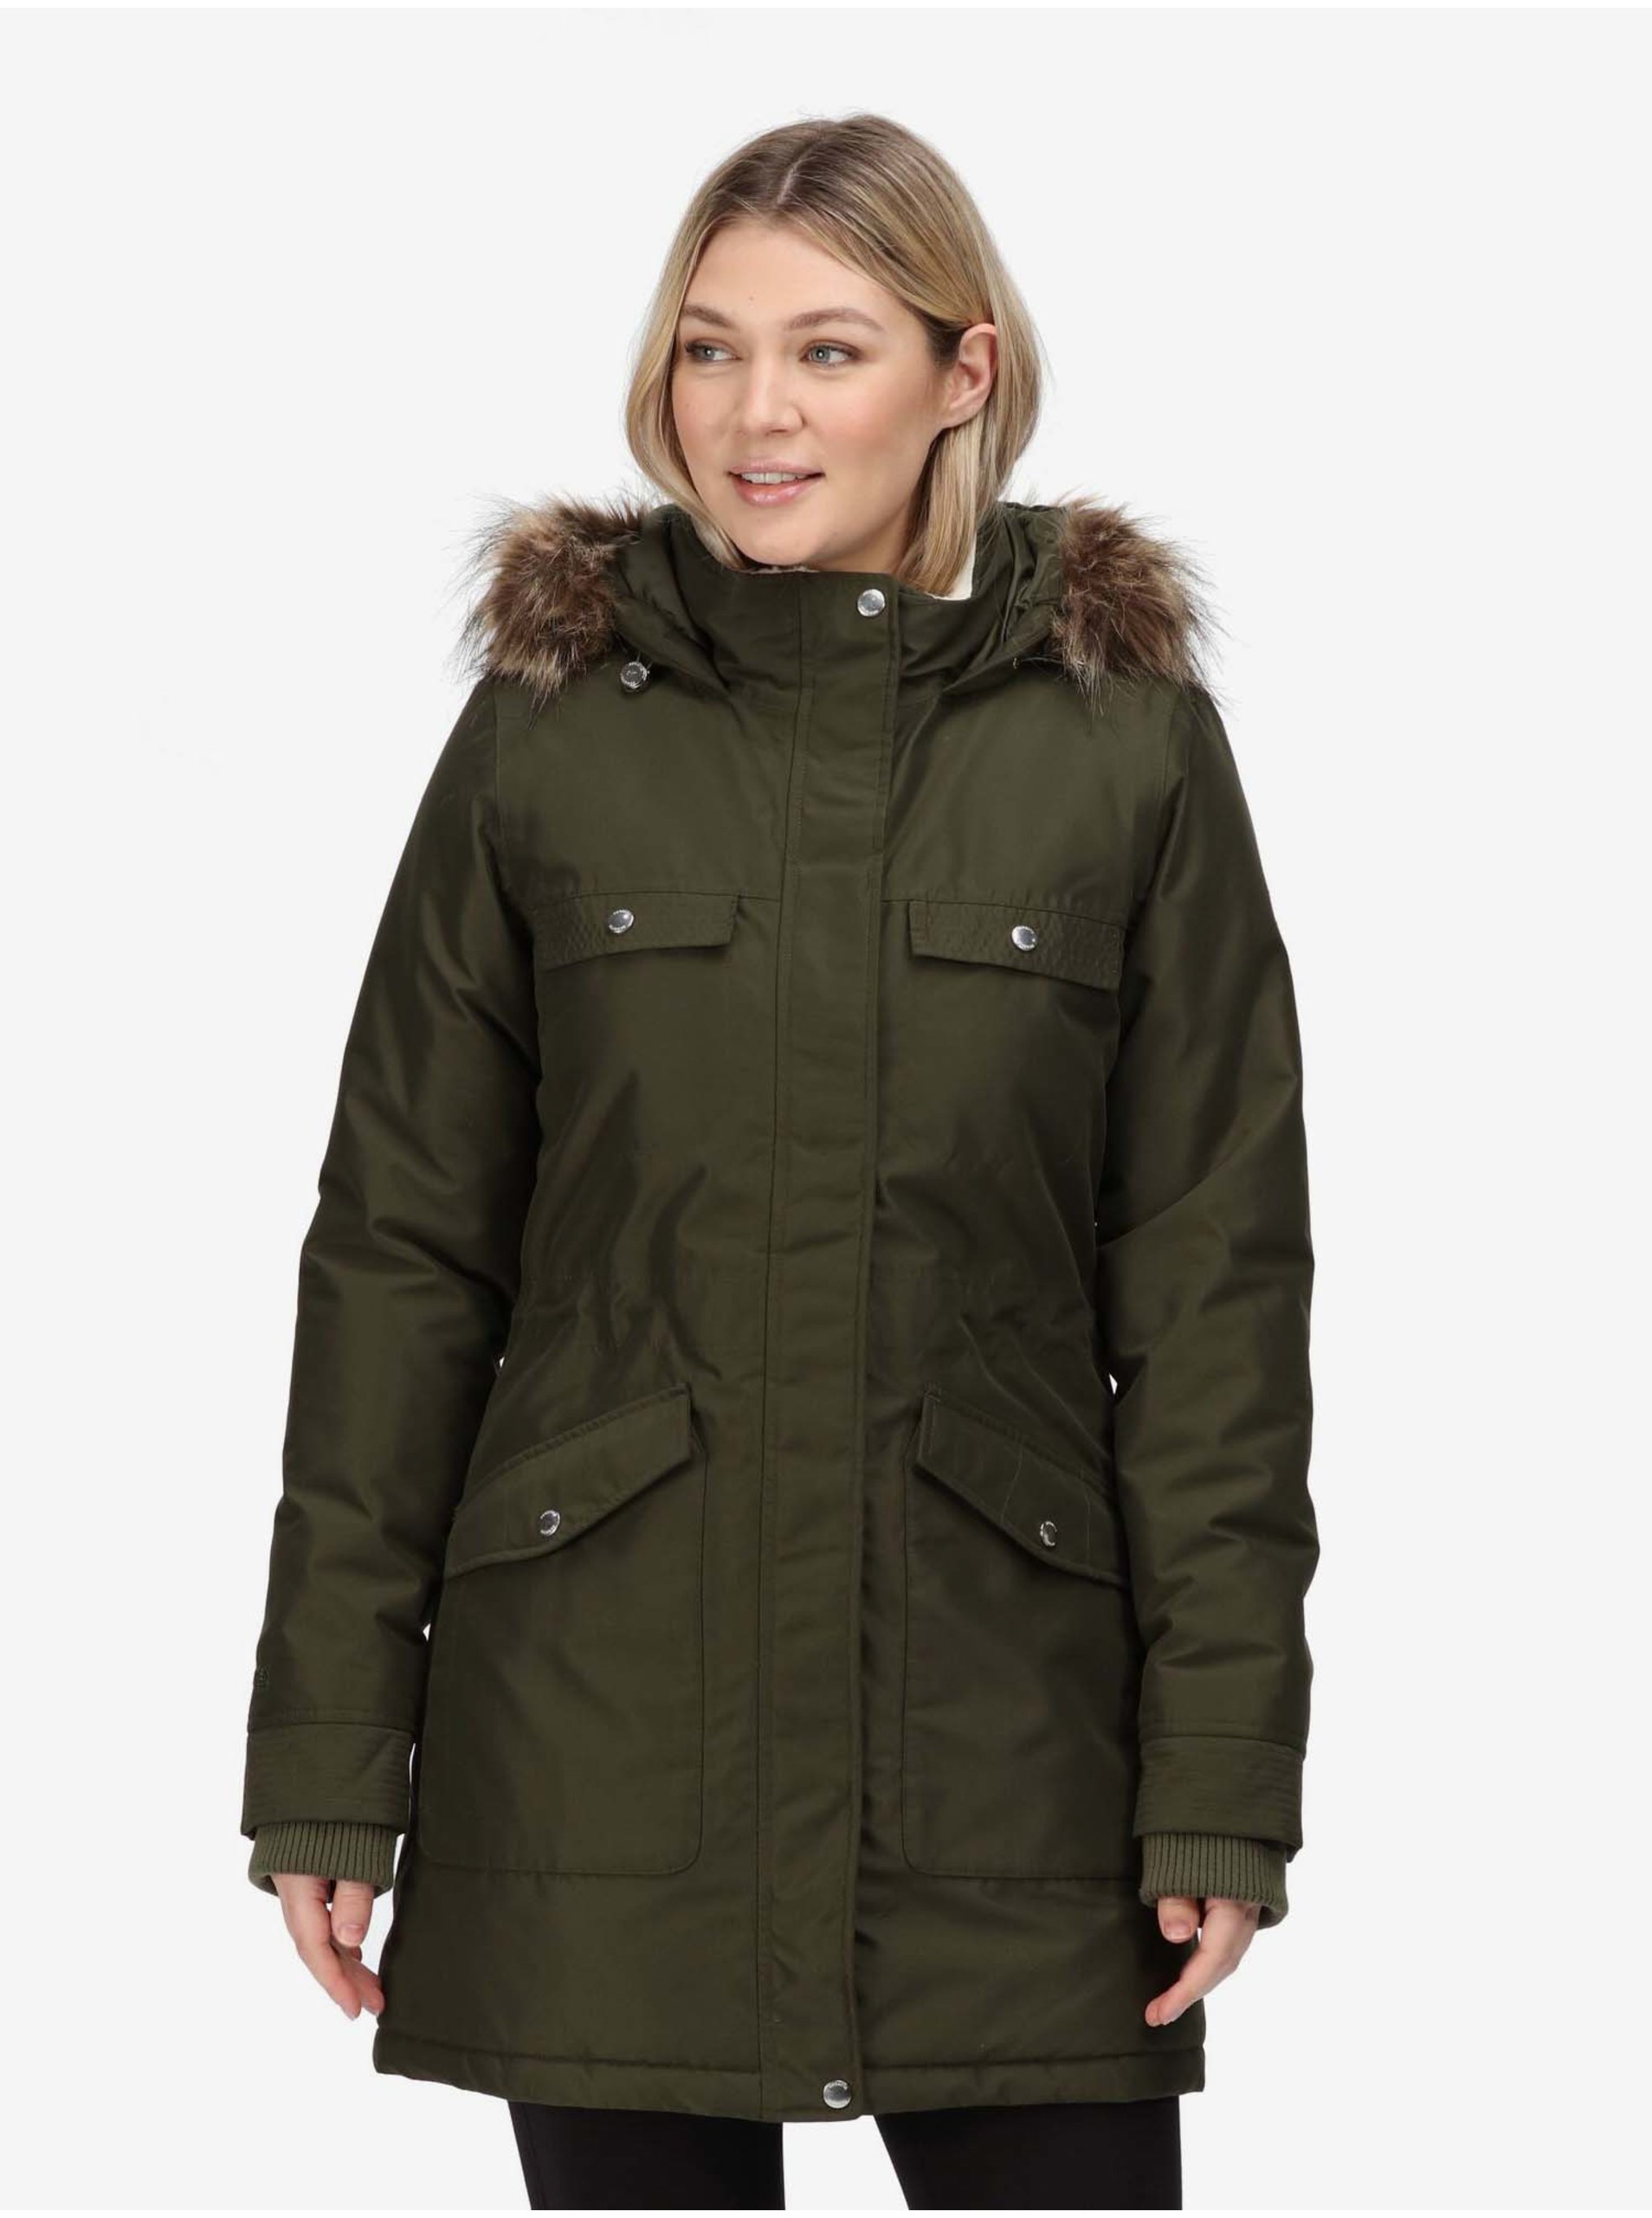 E-shop Tmavě zelený dámský kabát s kapucí Regatta Samiyah